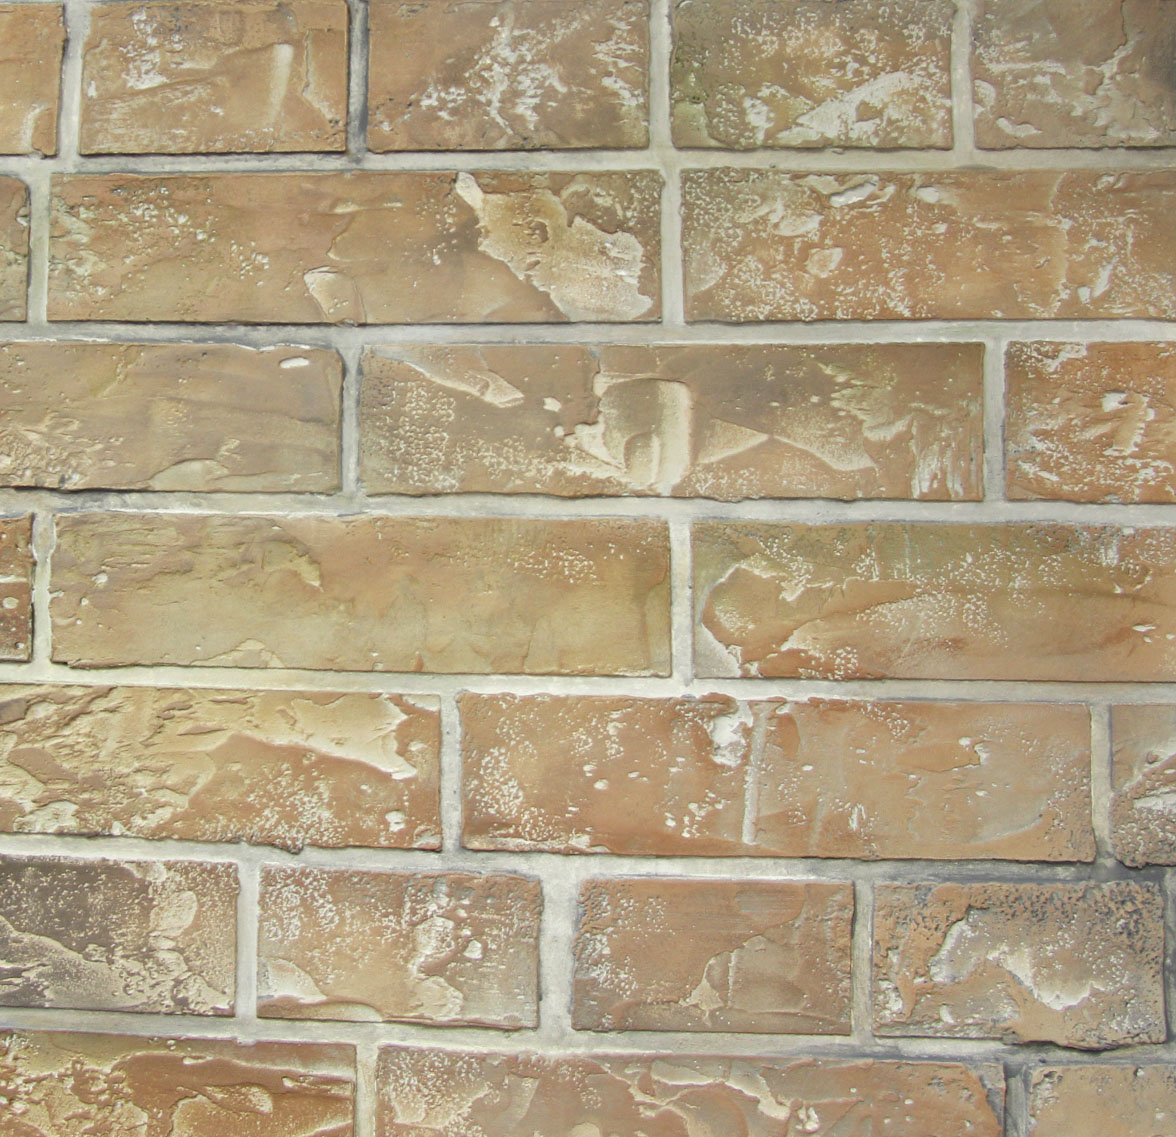 Мраморные стены, кожа крокодила — нарисованная роскошь